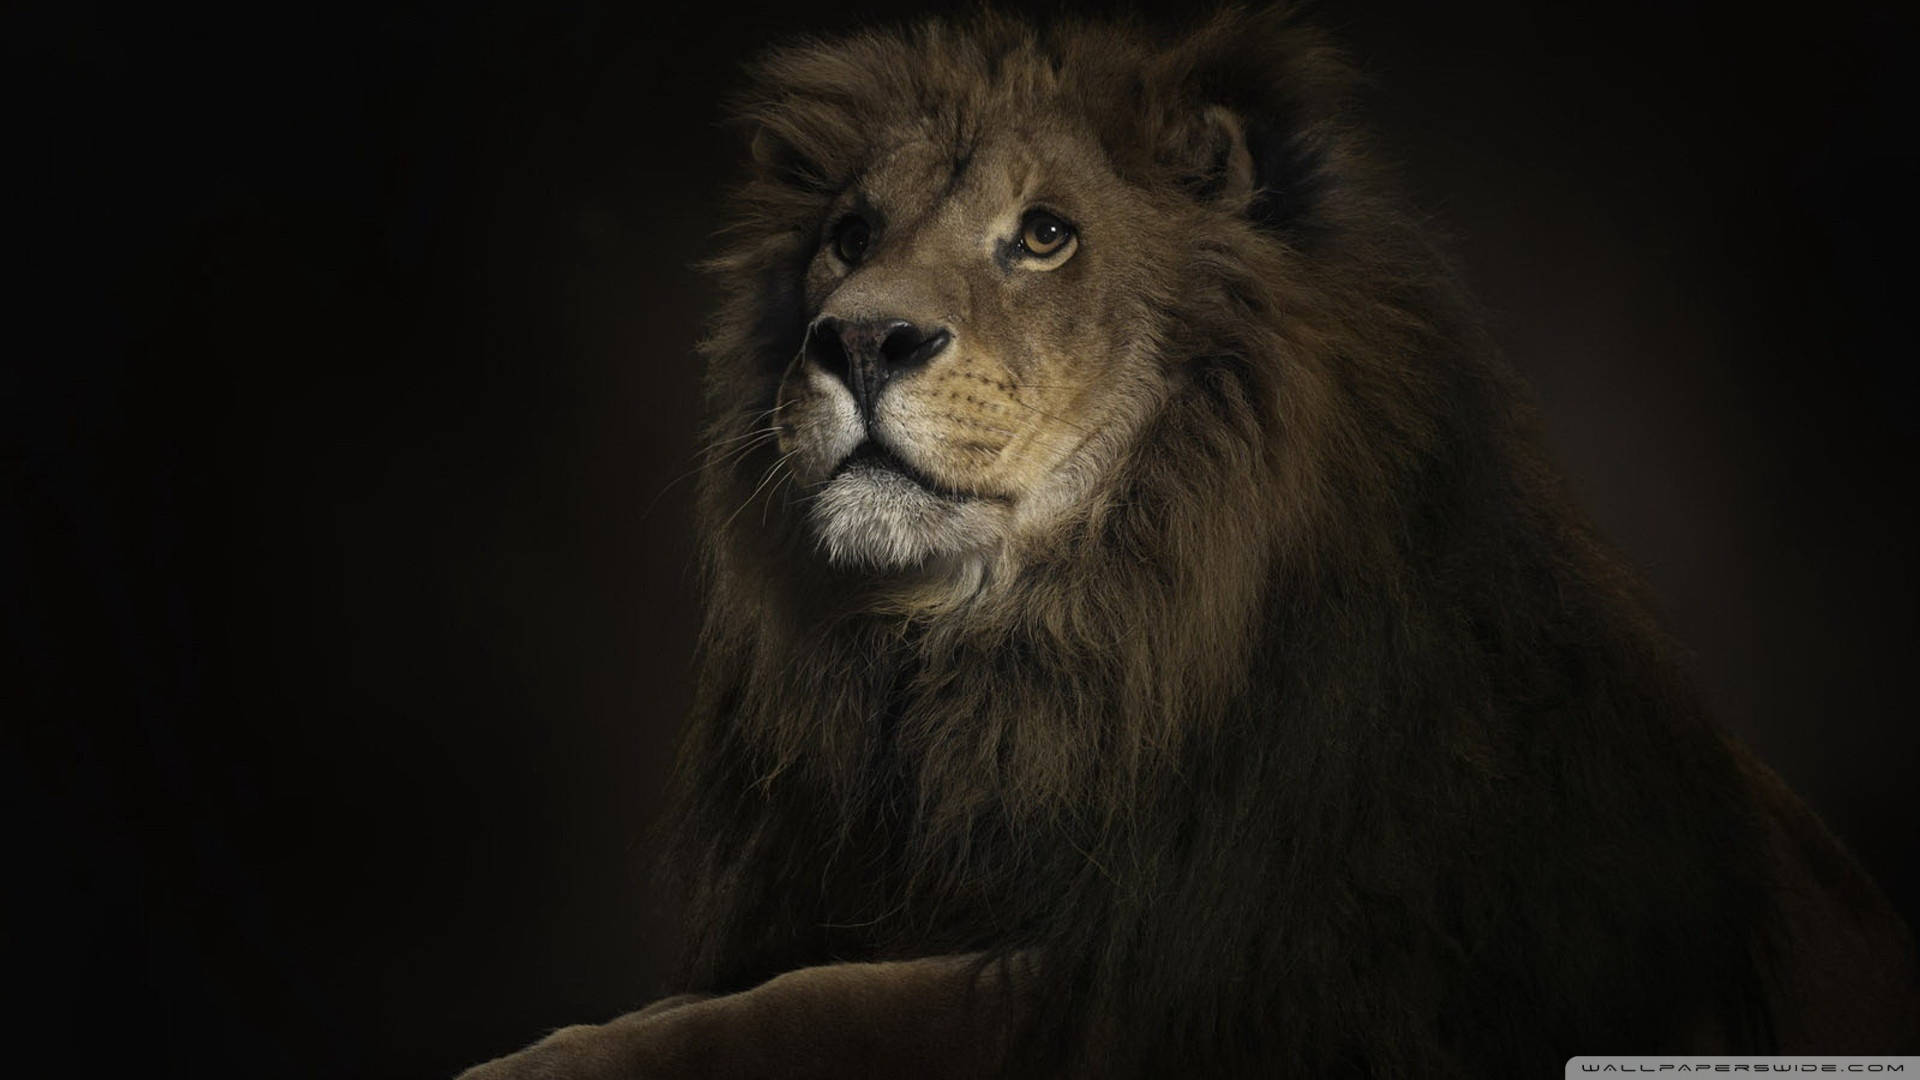 Portrait The Lion King